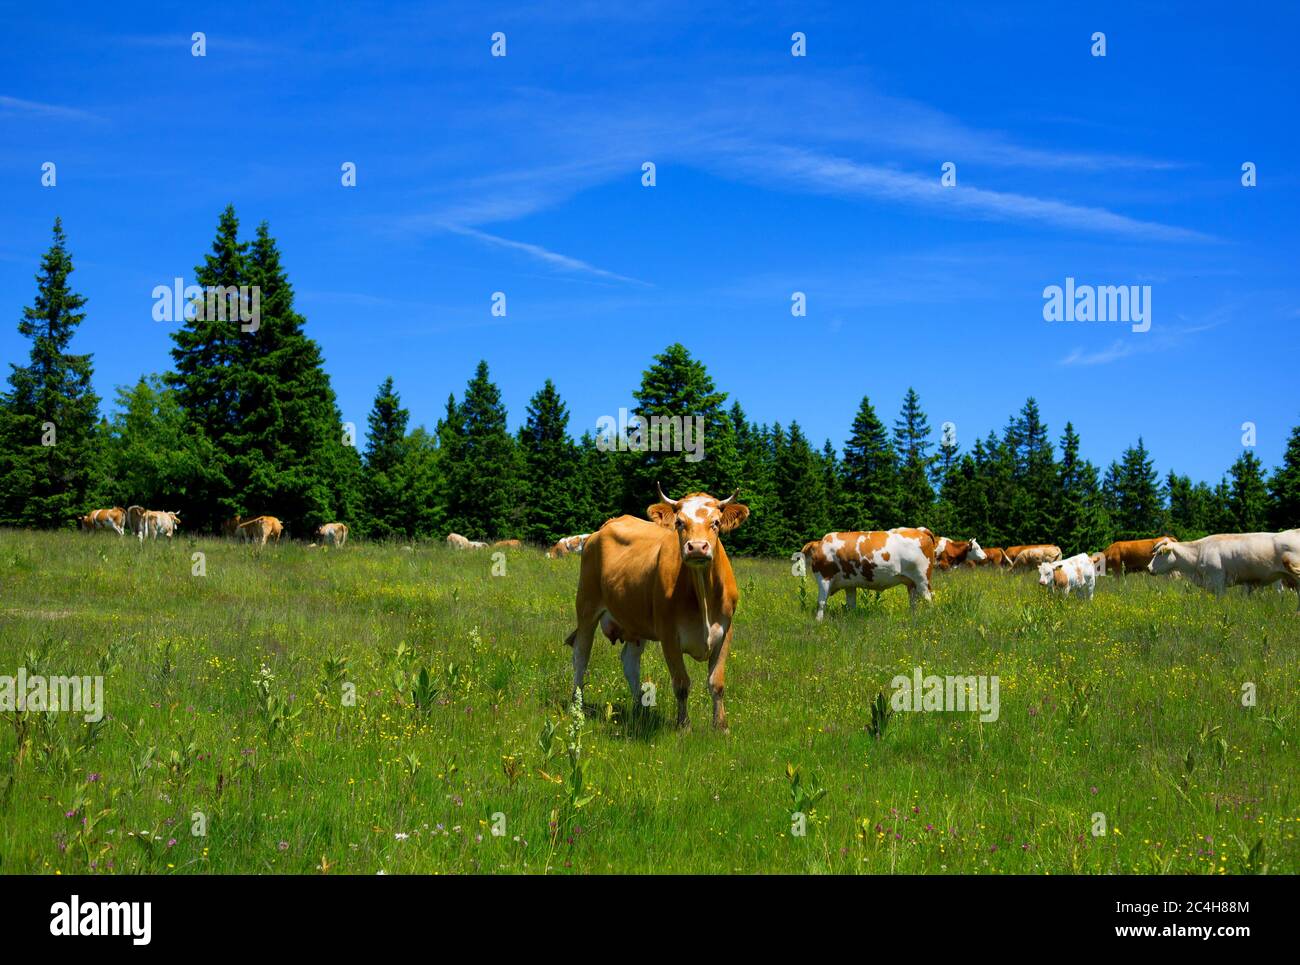 Rogla, Pohorje Gebirge, Slowenien, Europa - Kühe auf der Weide. Landschaft von schöner slowenischer Natur und Tierzucht Stockfoto